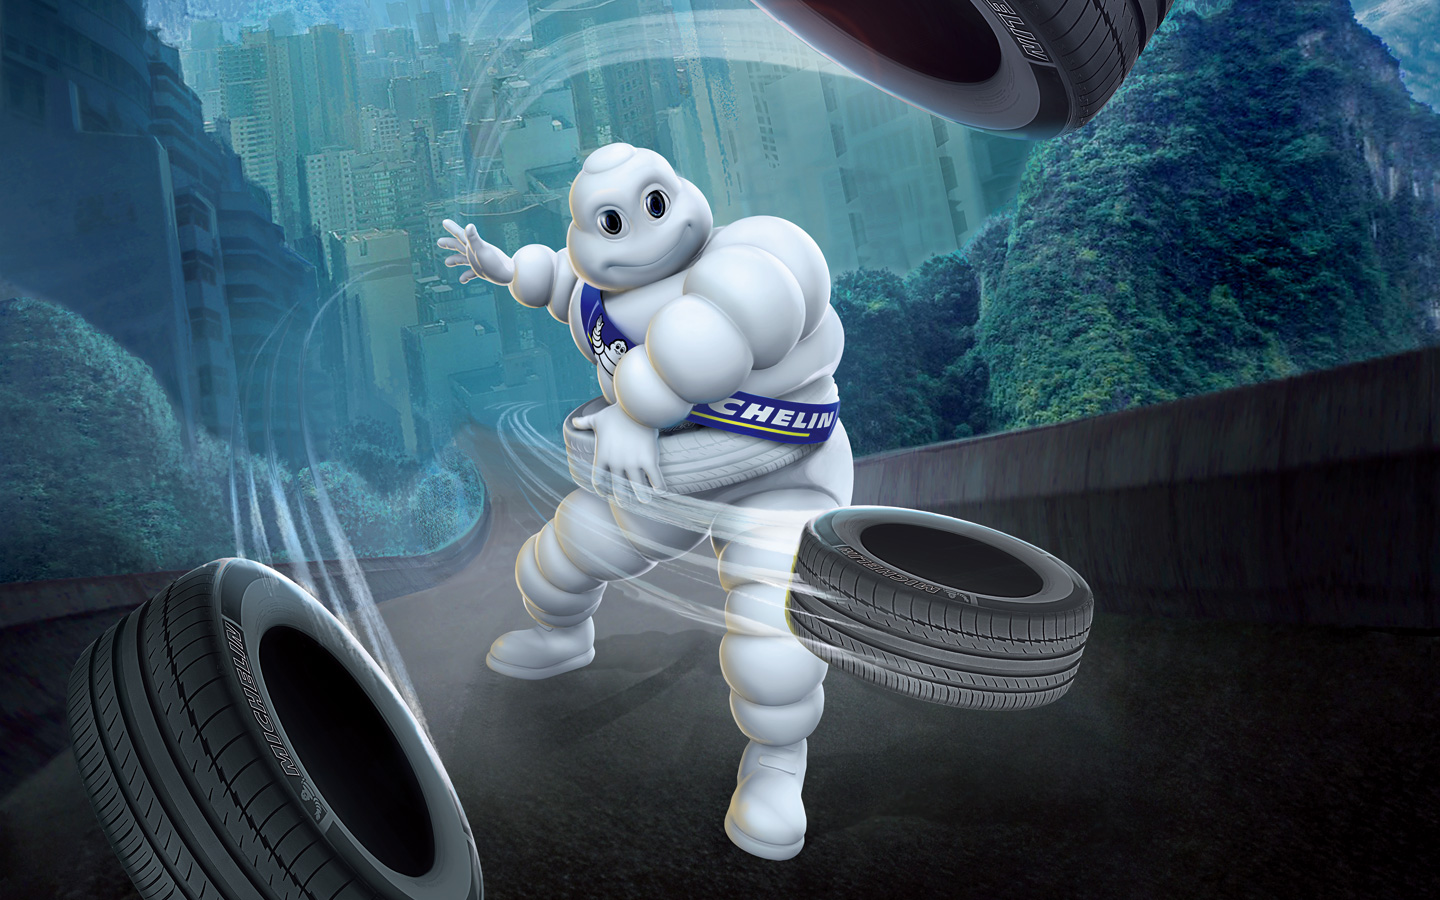 Автомобильные шины Michelin